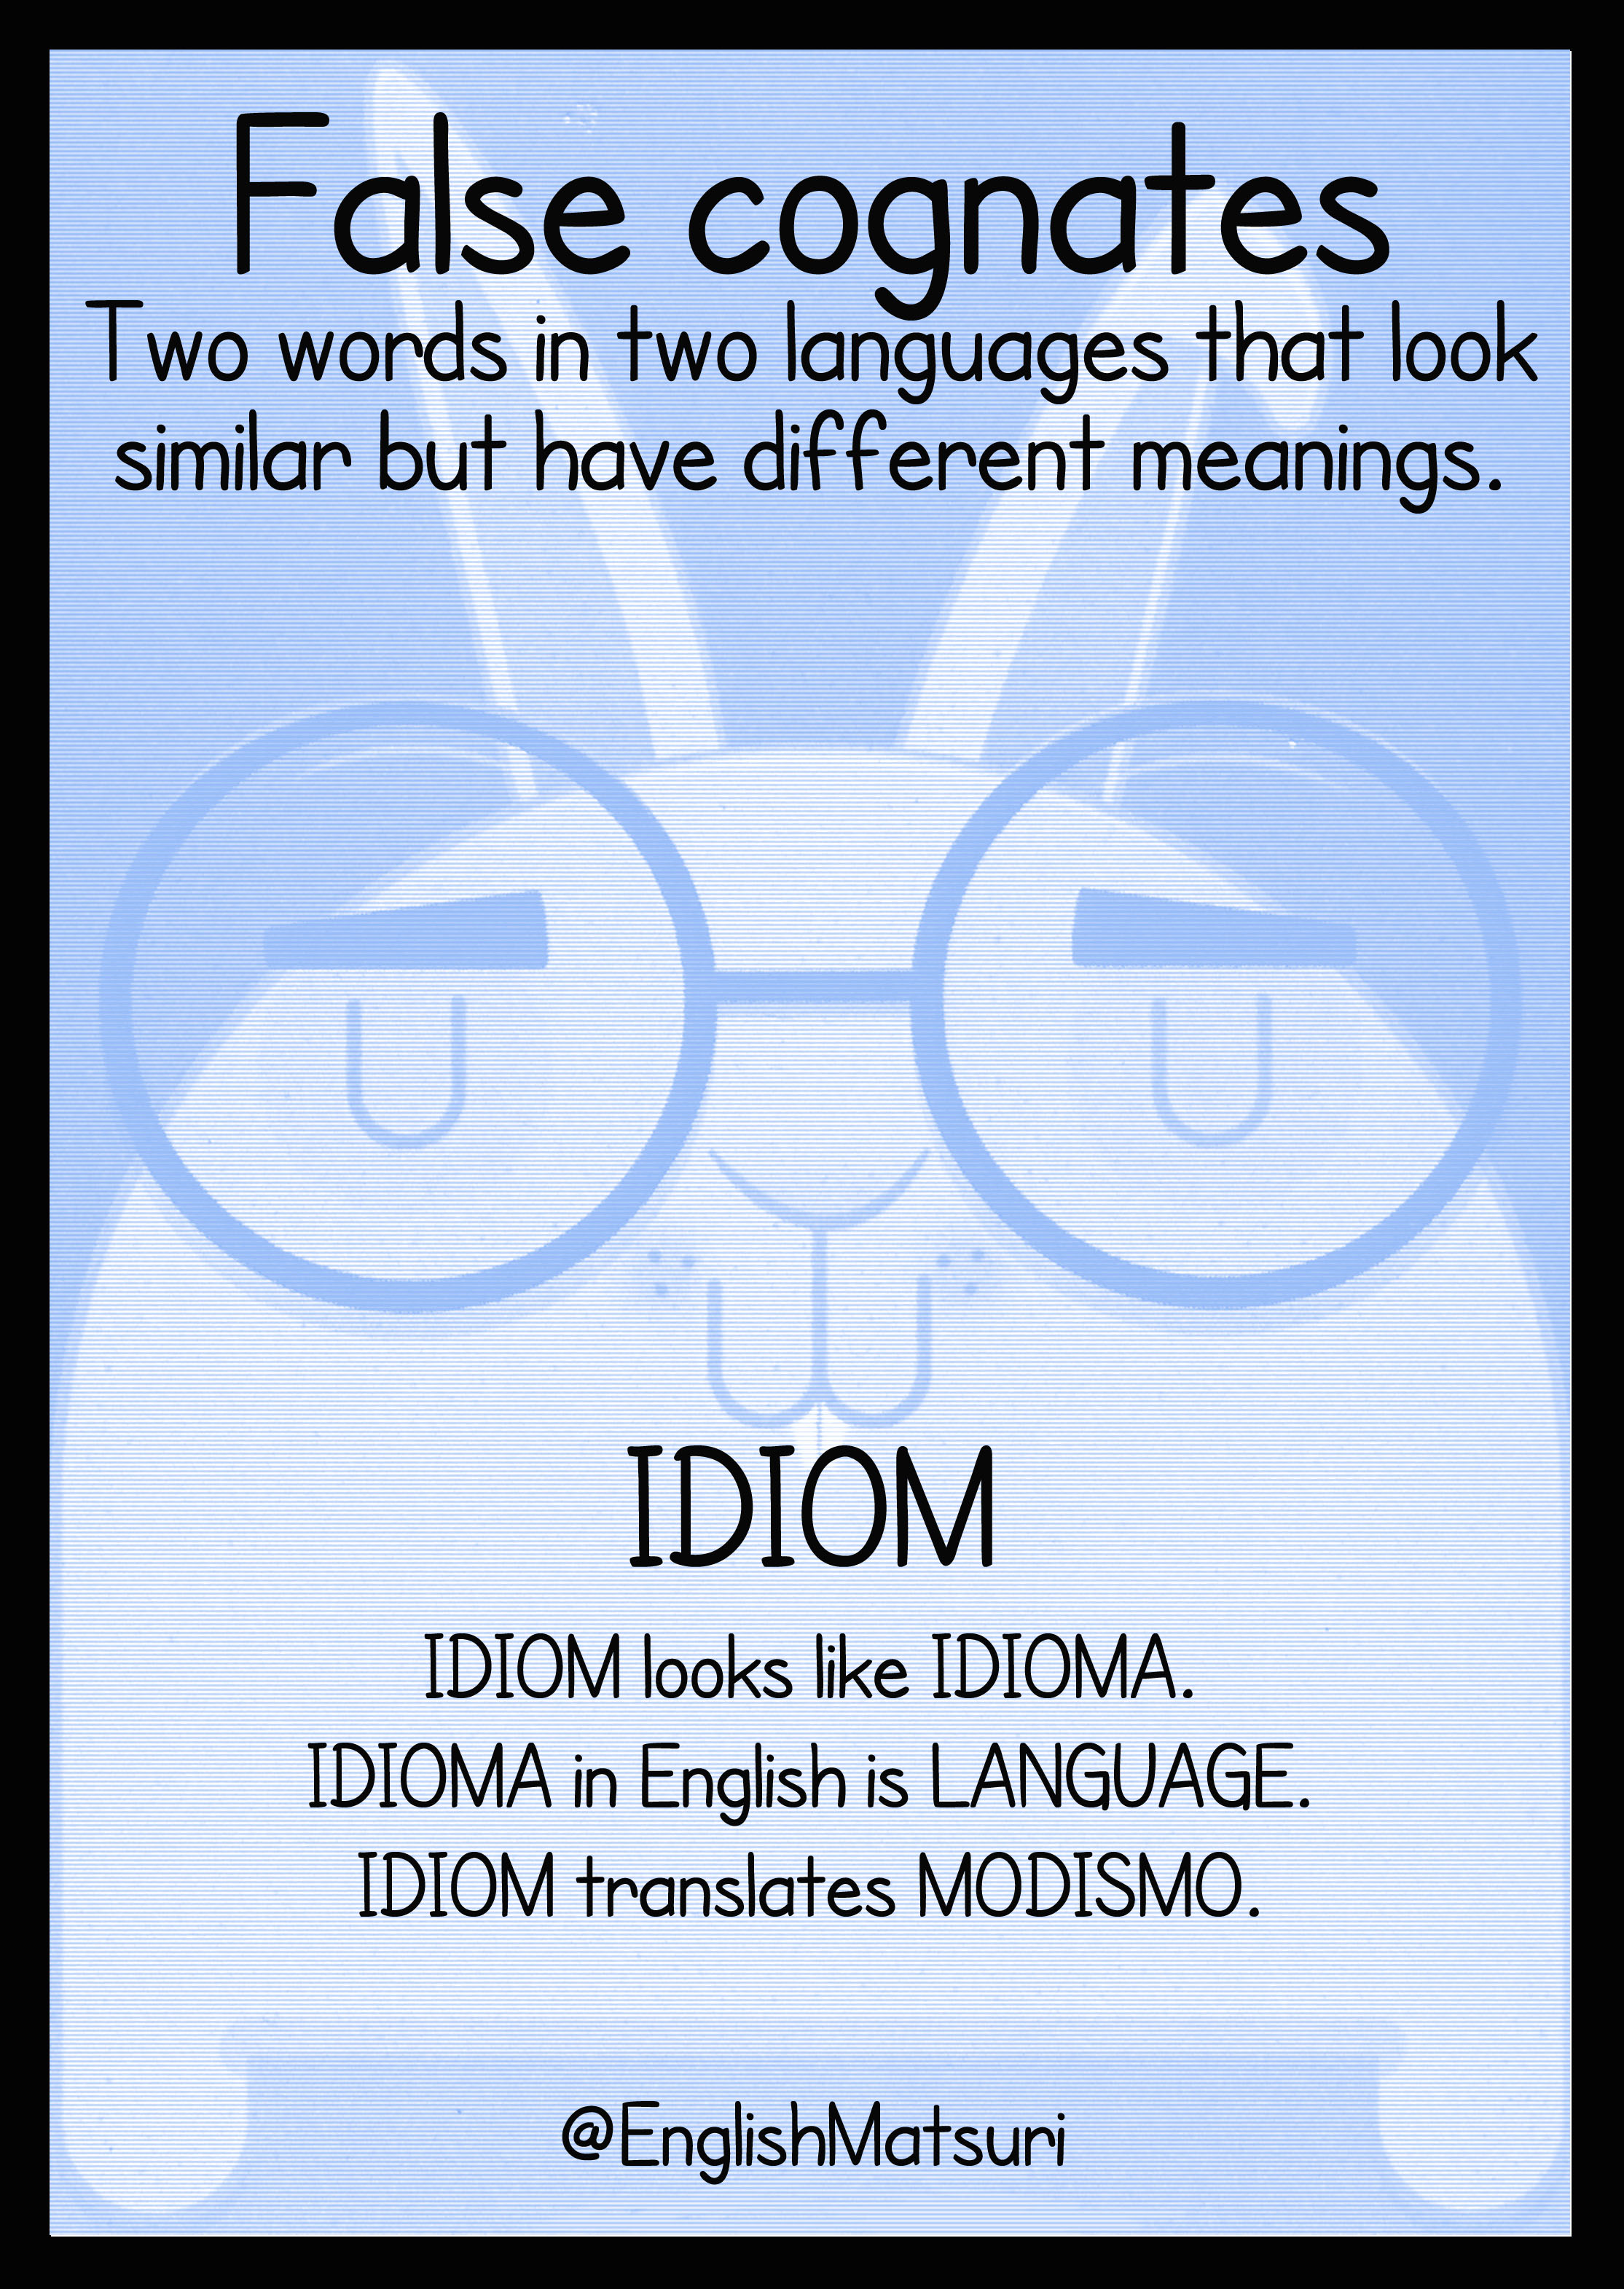 Idiom